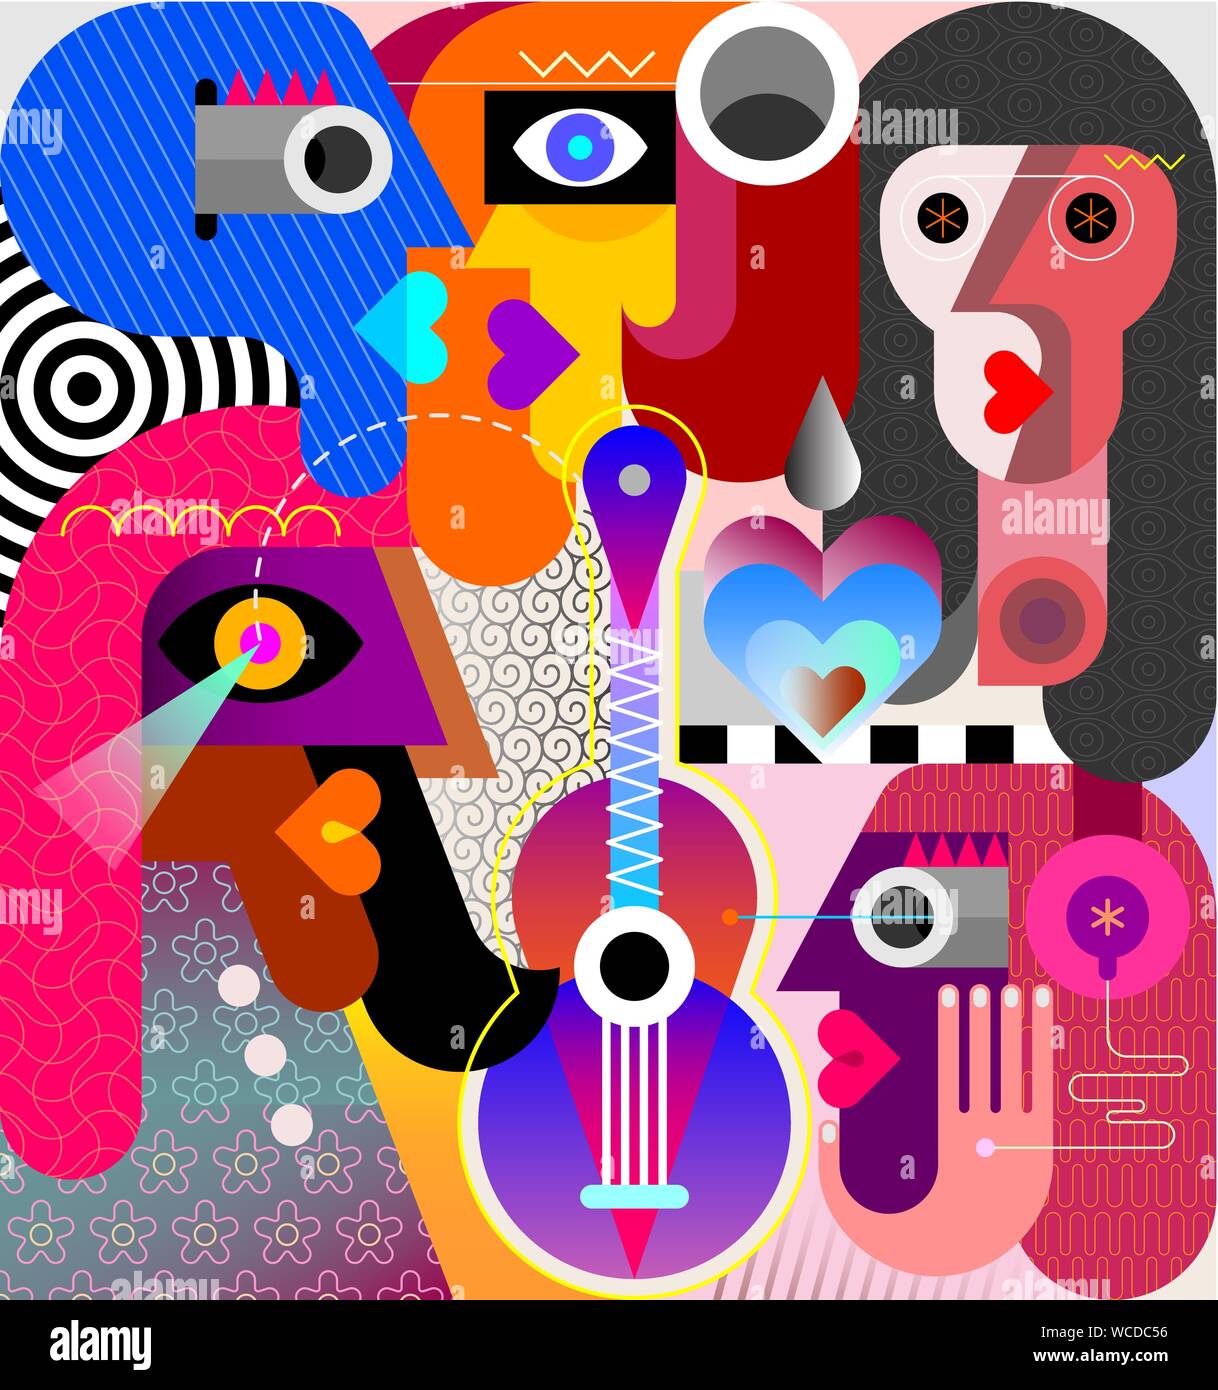 Cinq personnes et une seule guitare art abstrait moderne illustration vectorielle. Femme portant un casque. Illustration de Vecteur